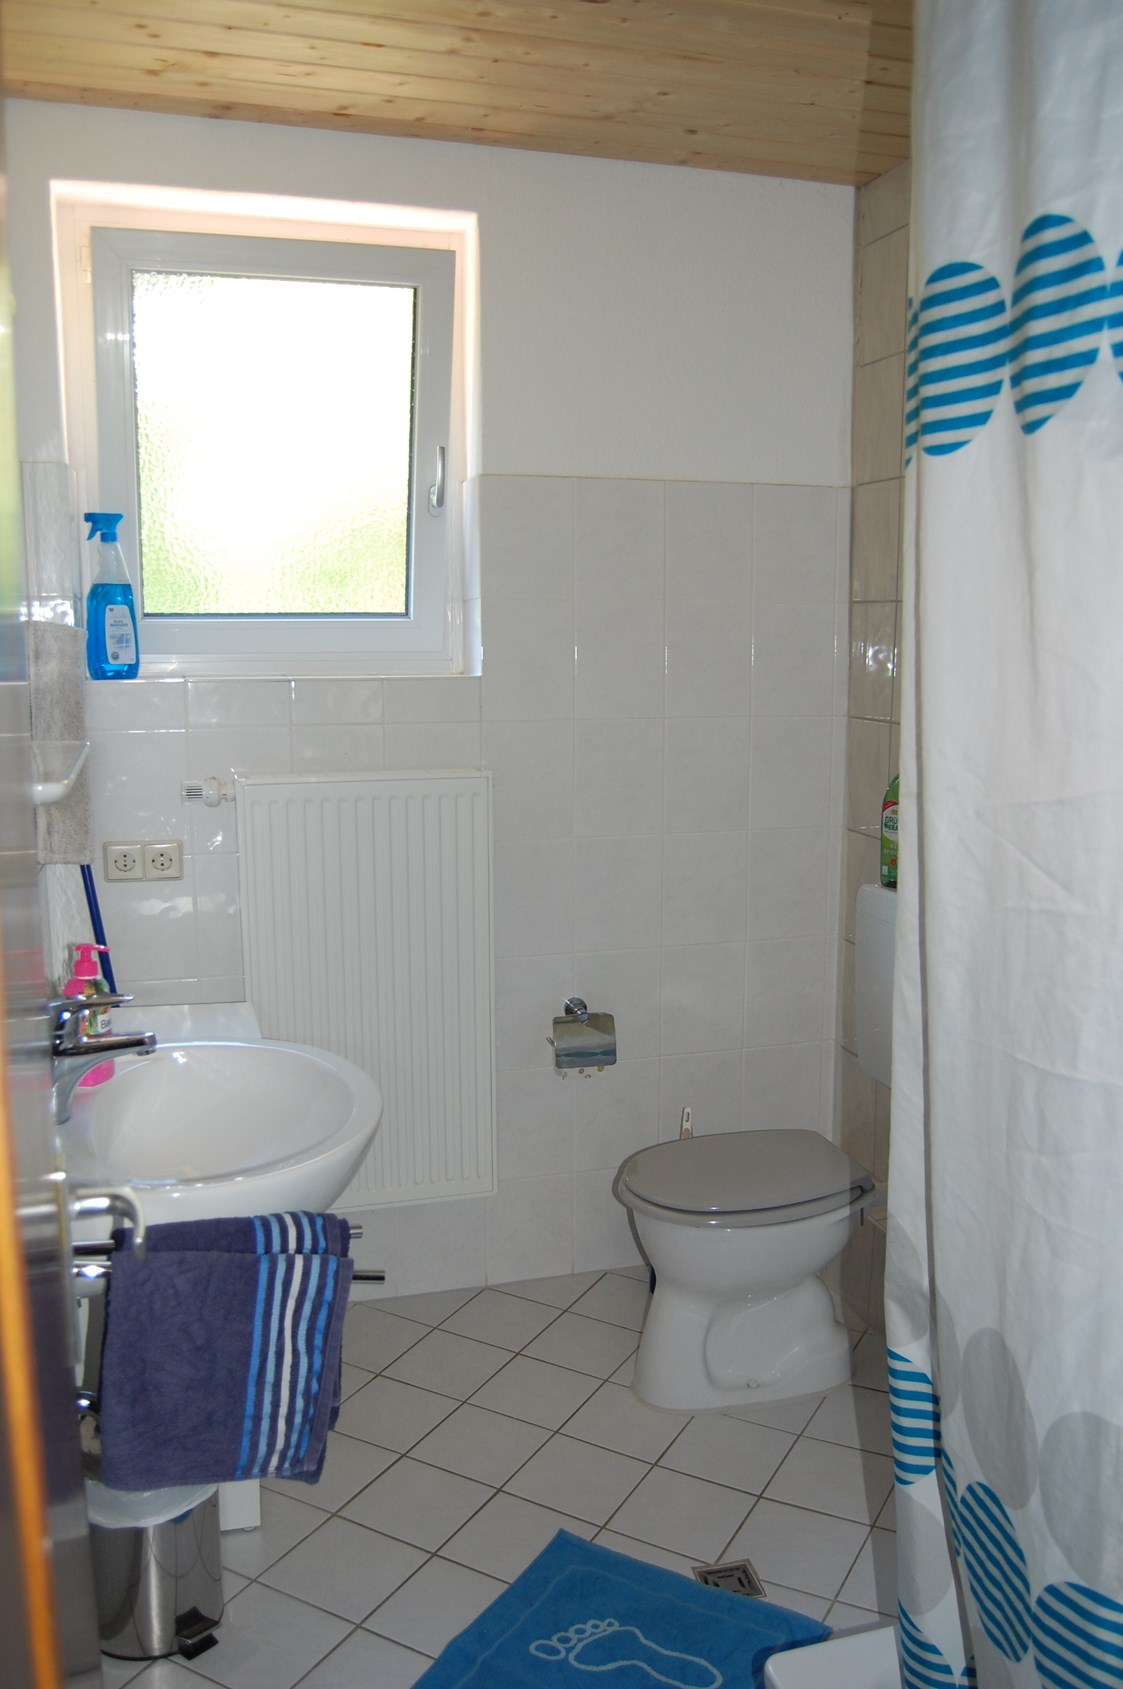 Monteurzimmer: Dusche, Waschv´becken und WC in der Monteurunterkunft im Schwarzwald - Hanspeterhof